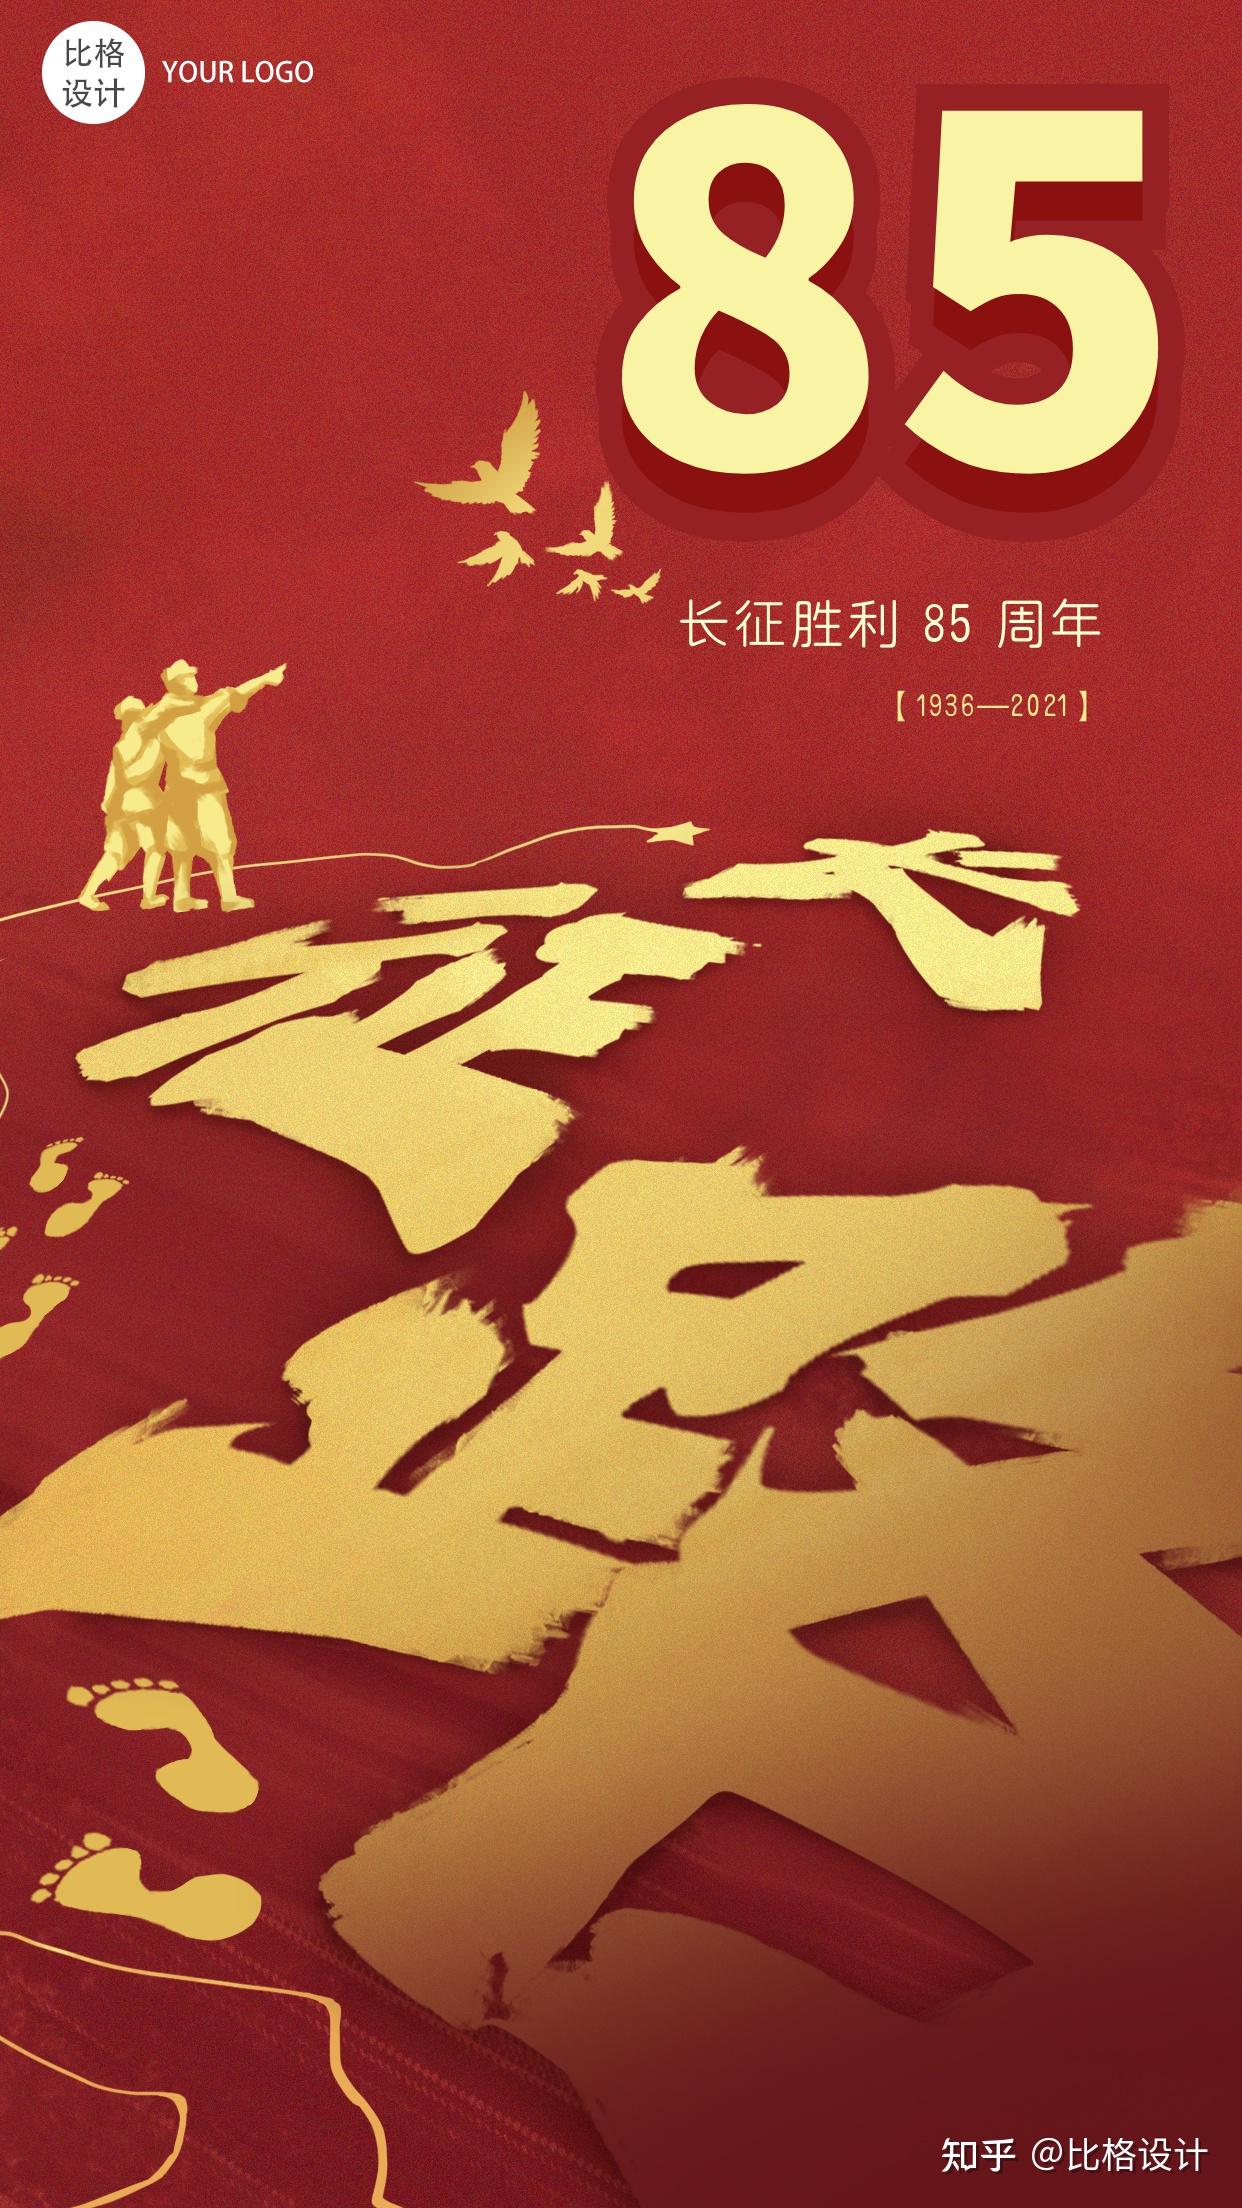 纪念红军长征胜利85周年,长征纪念日"的图片海报素材了,希望对大家有